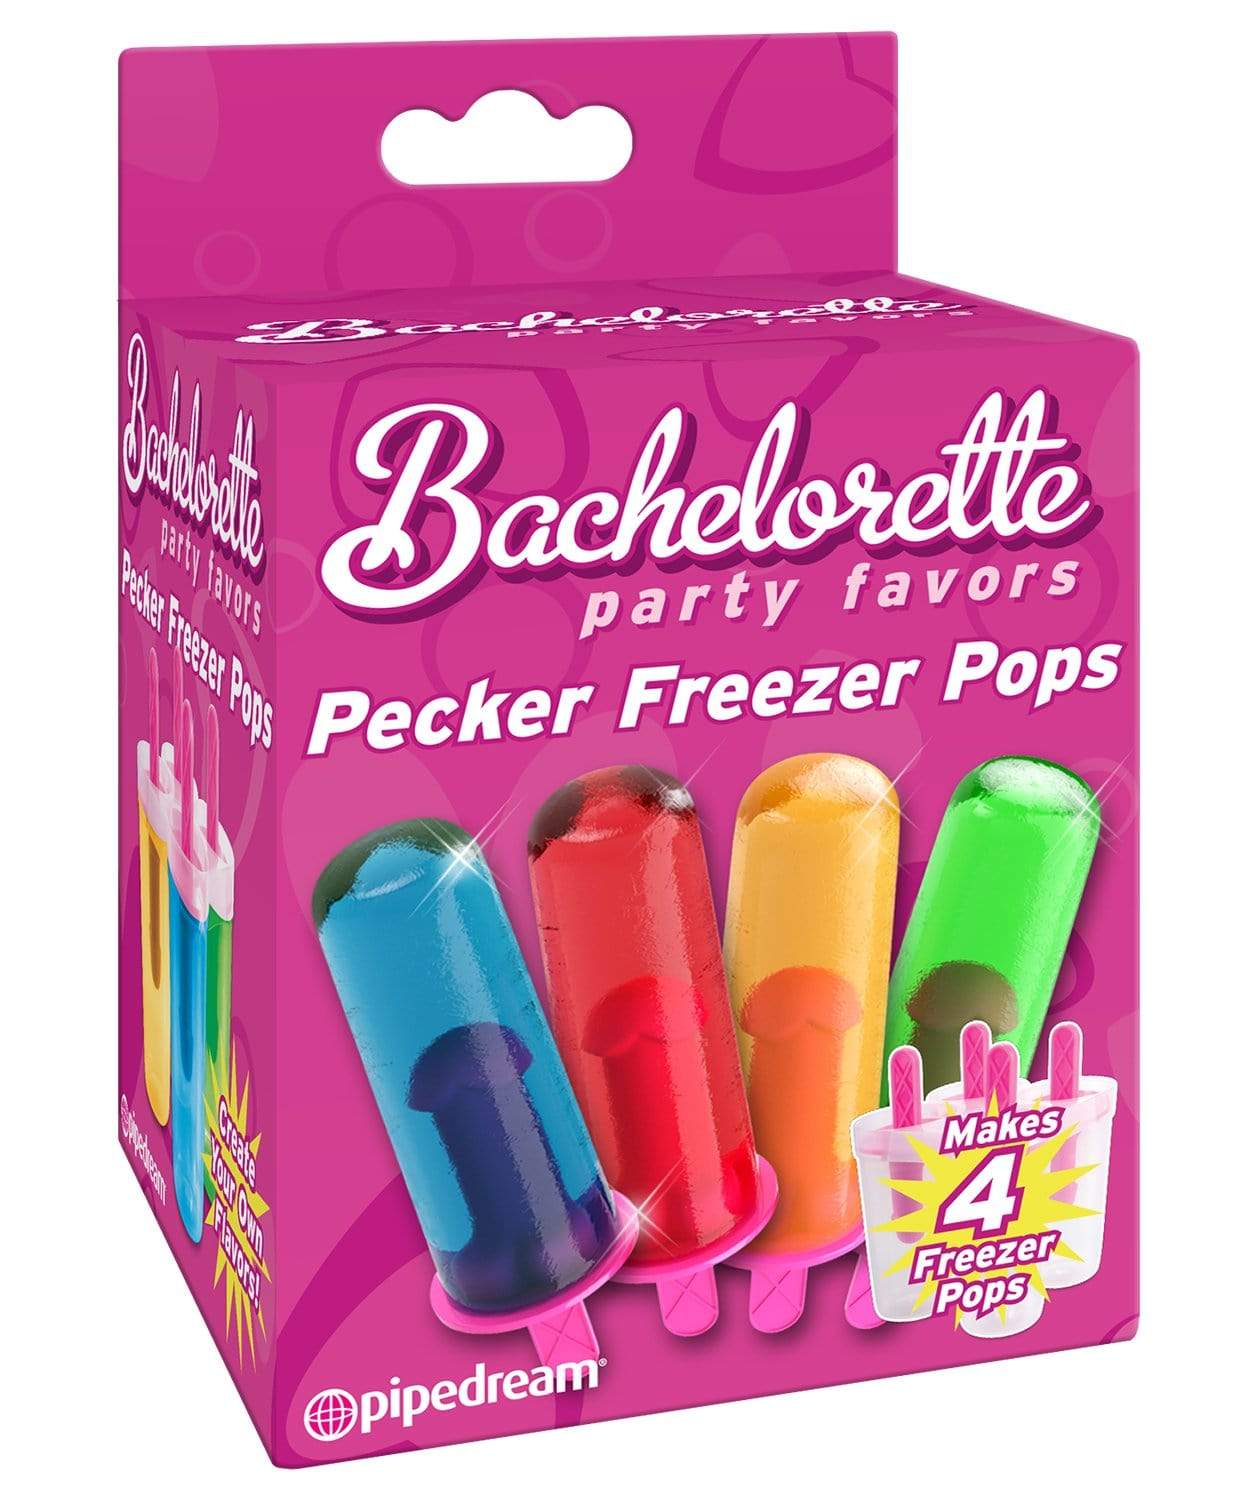 bachelorette party favors pecker freezer pops